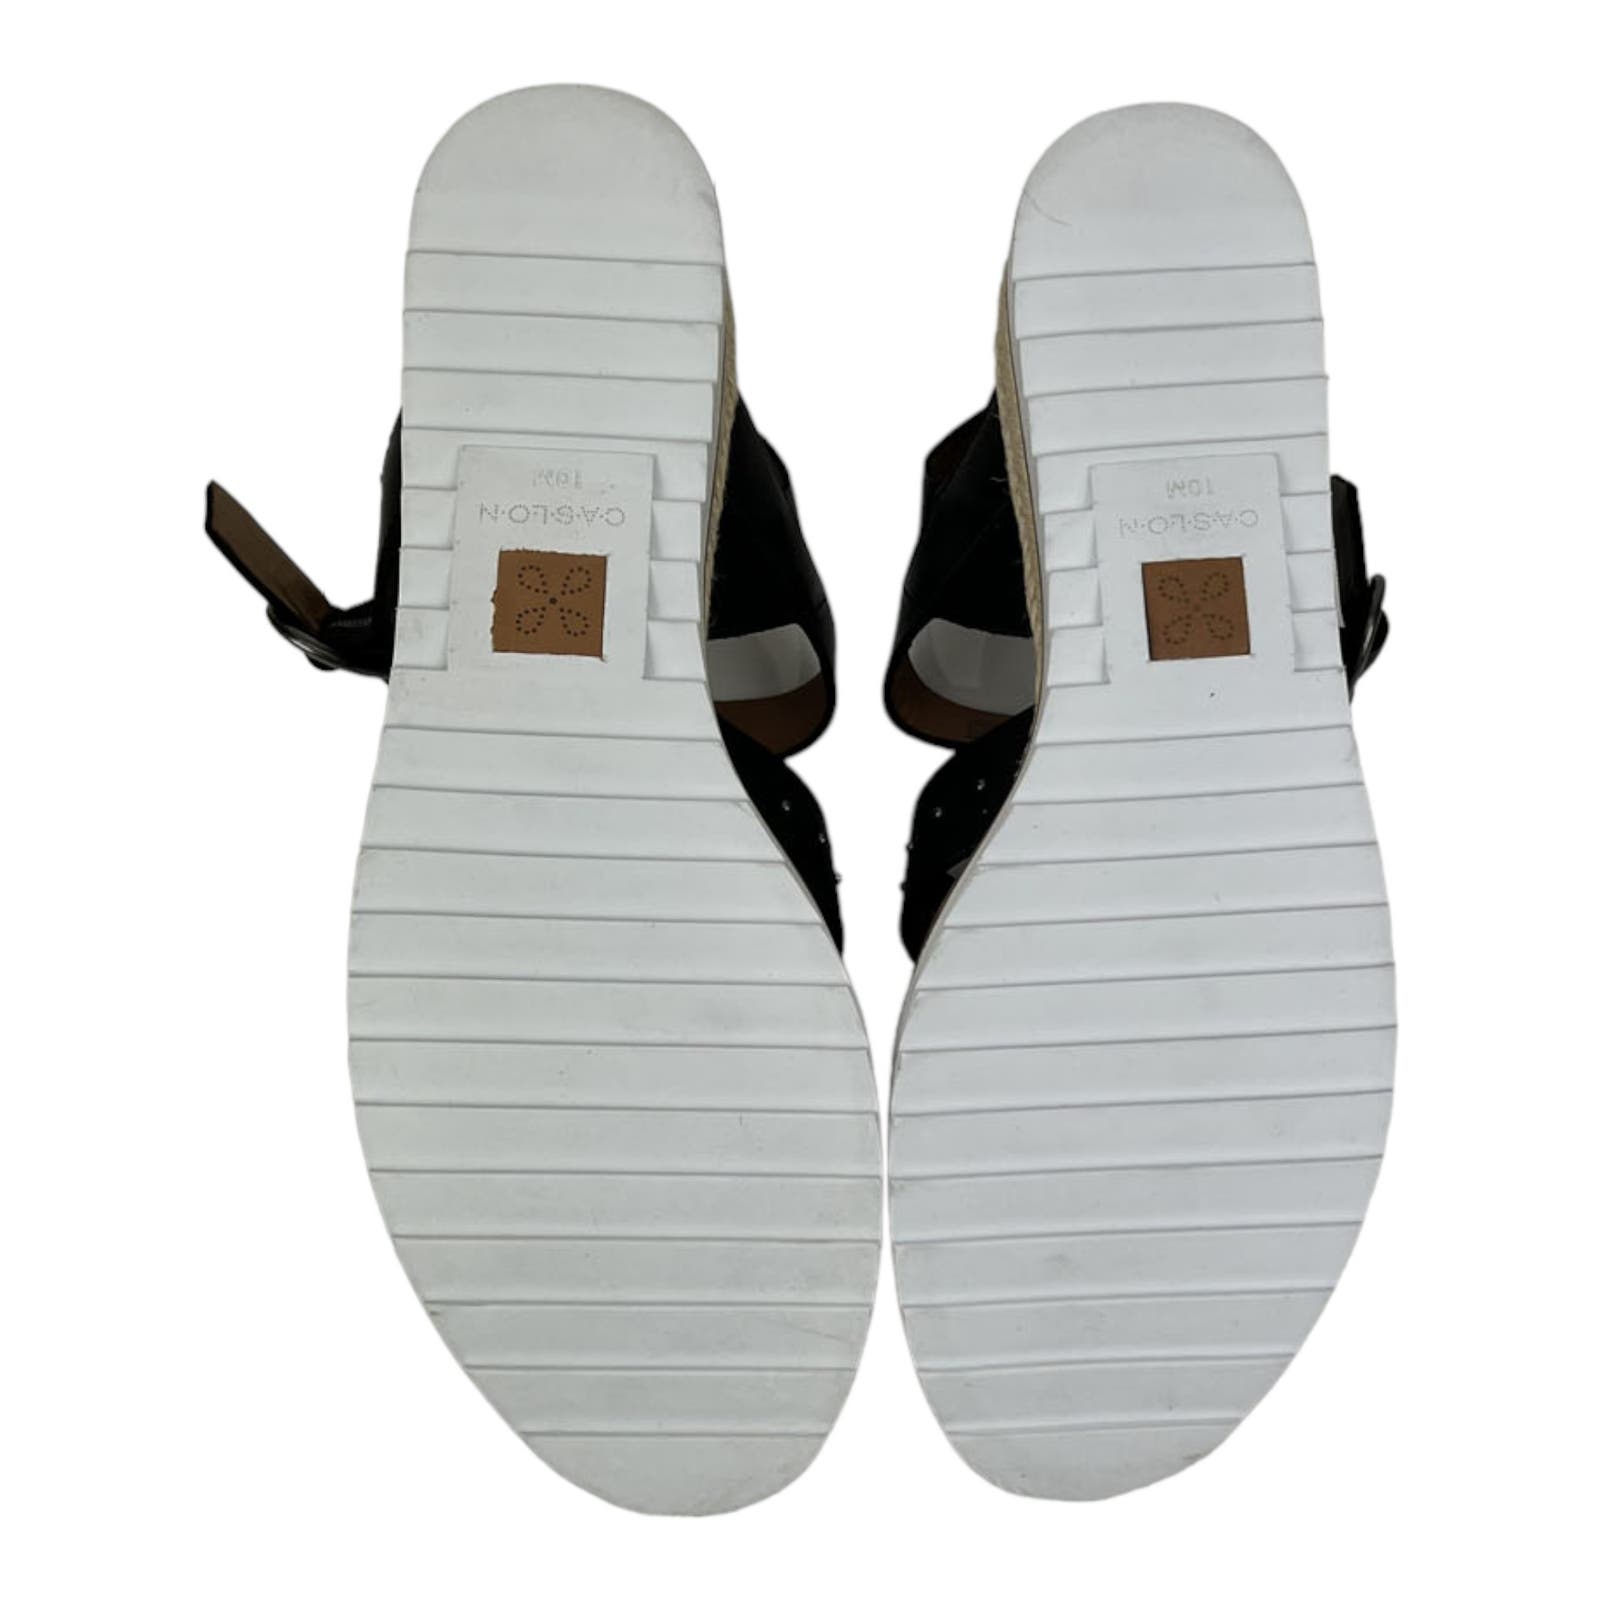 Caslon Women US 10 Slides Black Leather Sandal Shoes